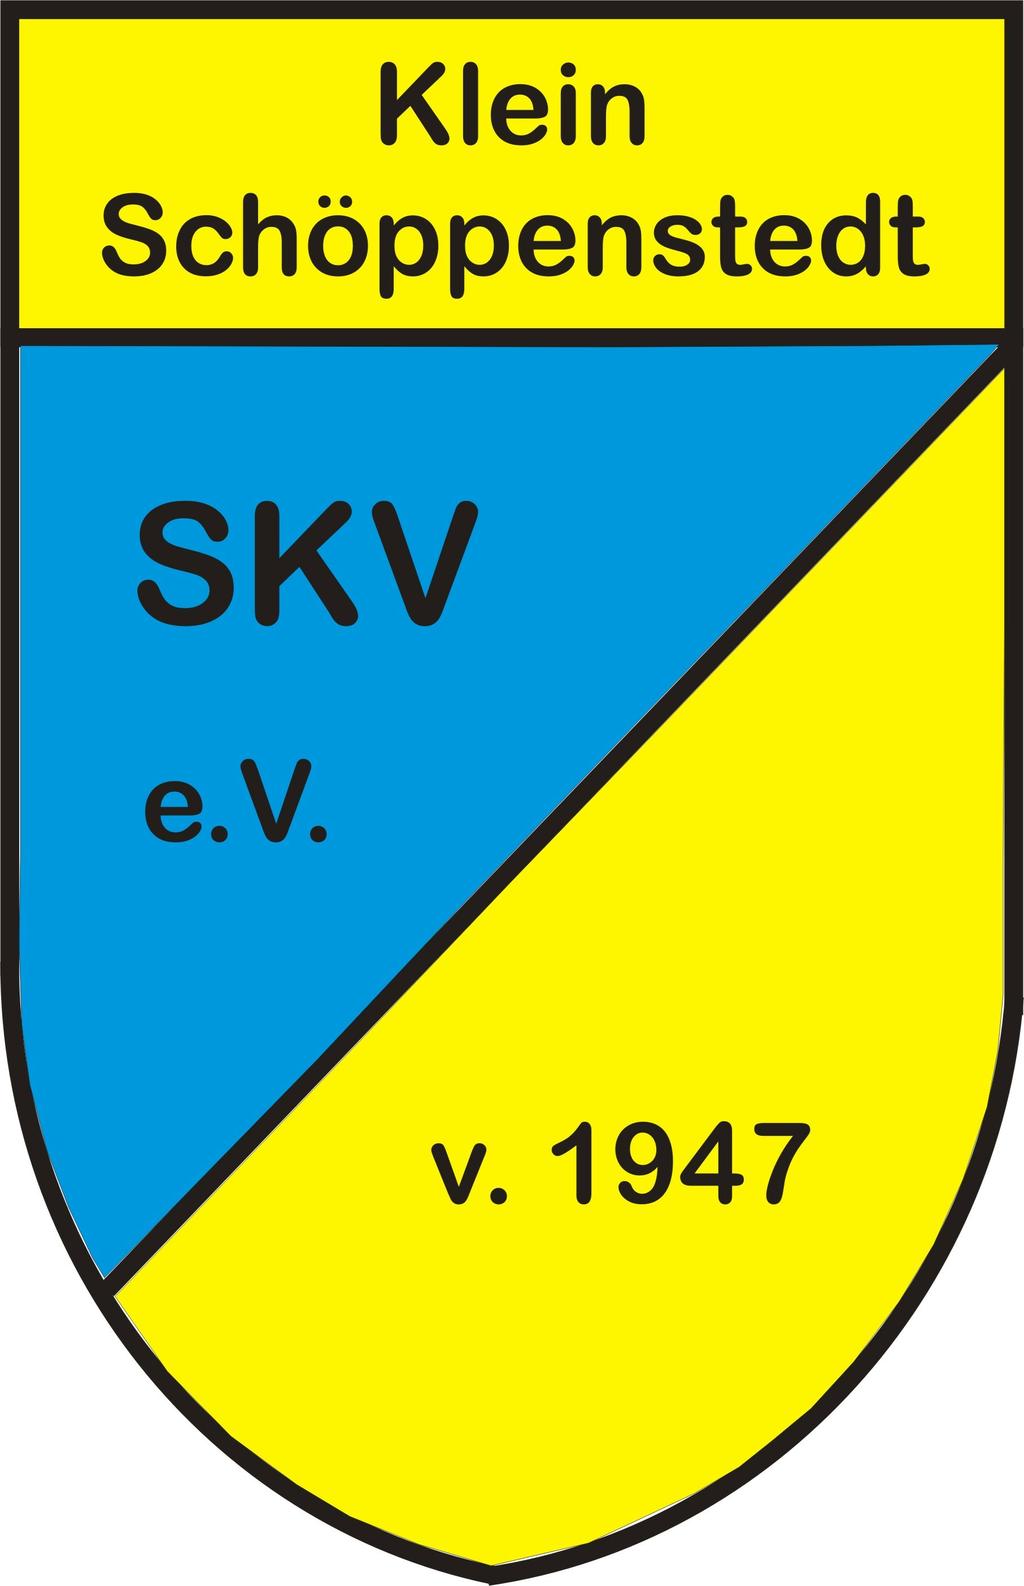 S a t z u n g 1 Name und Sitz des Vereins Der Verein führt den Namen: Sport- und Kulturverein Klein Schöppenstedt und hat den Sitz in Klein Schöppenstedt. Gründungstag ist der 14. Februar 1947.